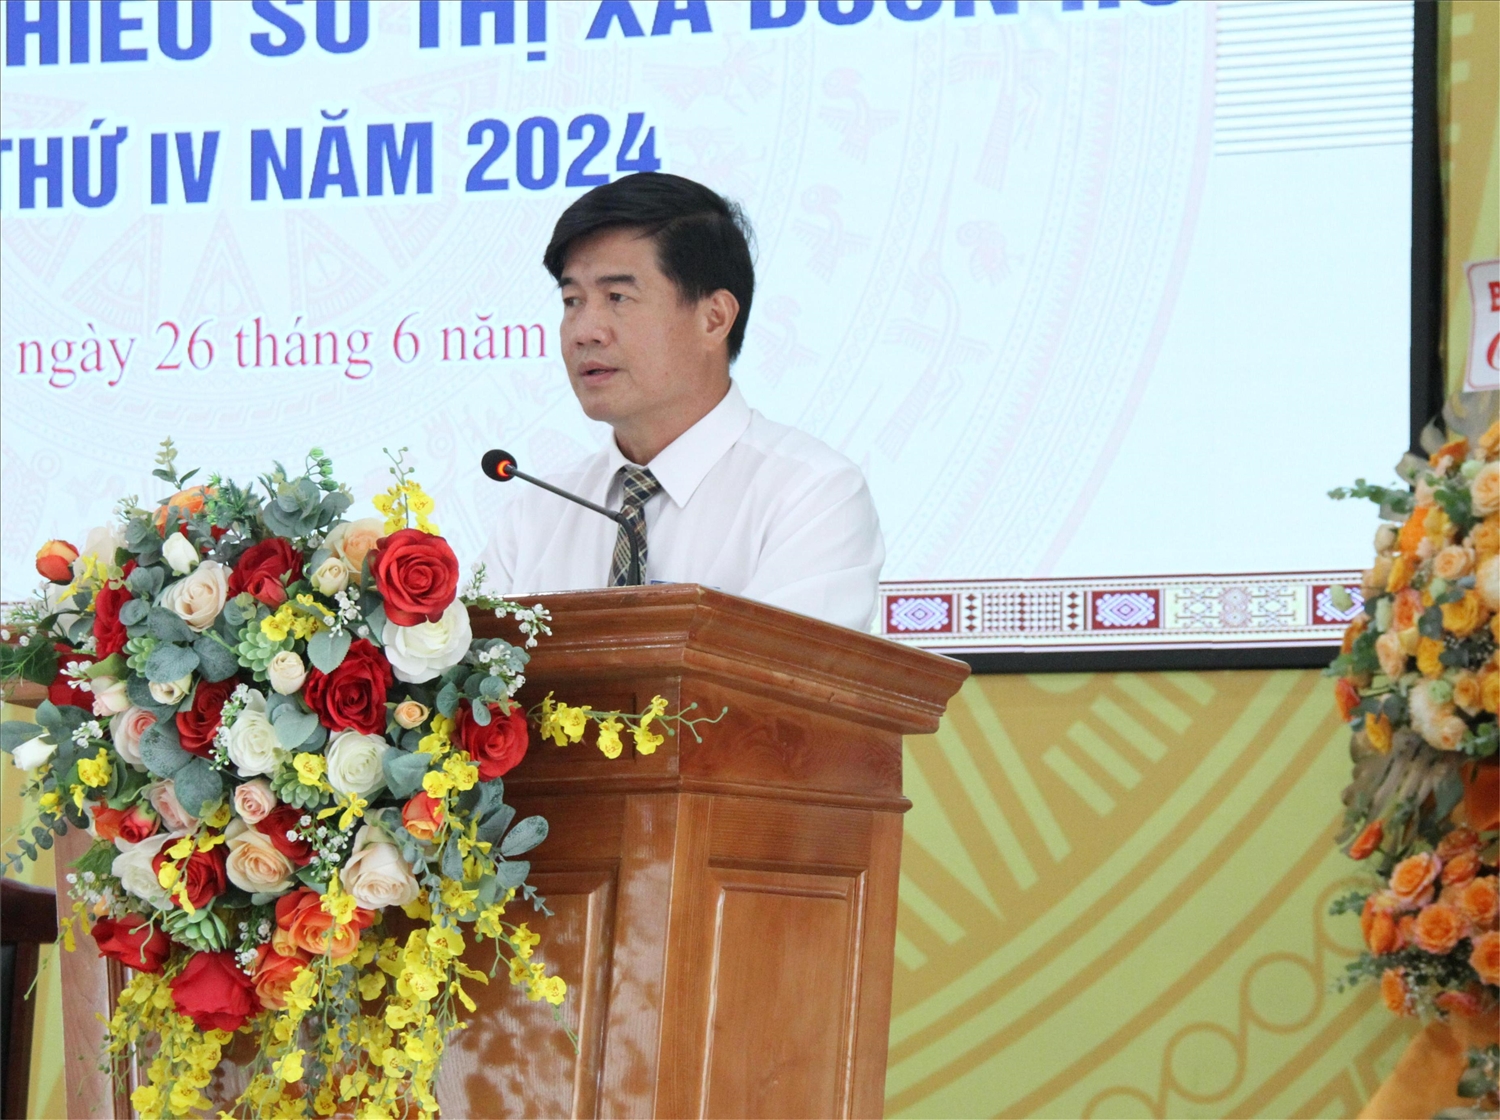 Phó Chủ tịch UBND tỉnh Đắk Lắk, Trưởng Ban Chỉ đạo Đại hội Đại biểu các DTTS tỉnh Nguyễn Thiên Văn phát biểu chỉ đạo Đại hội 